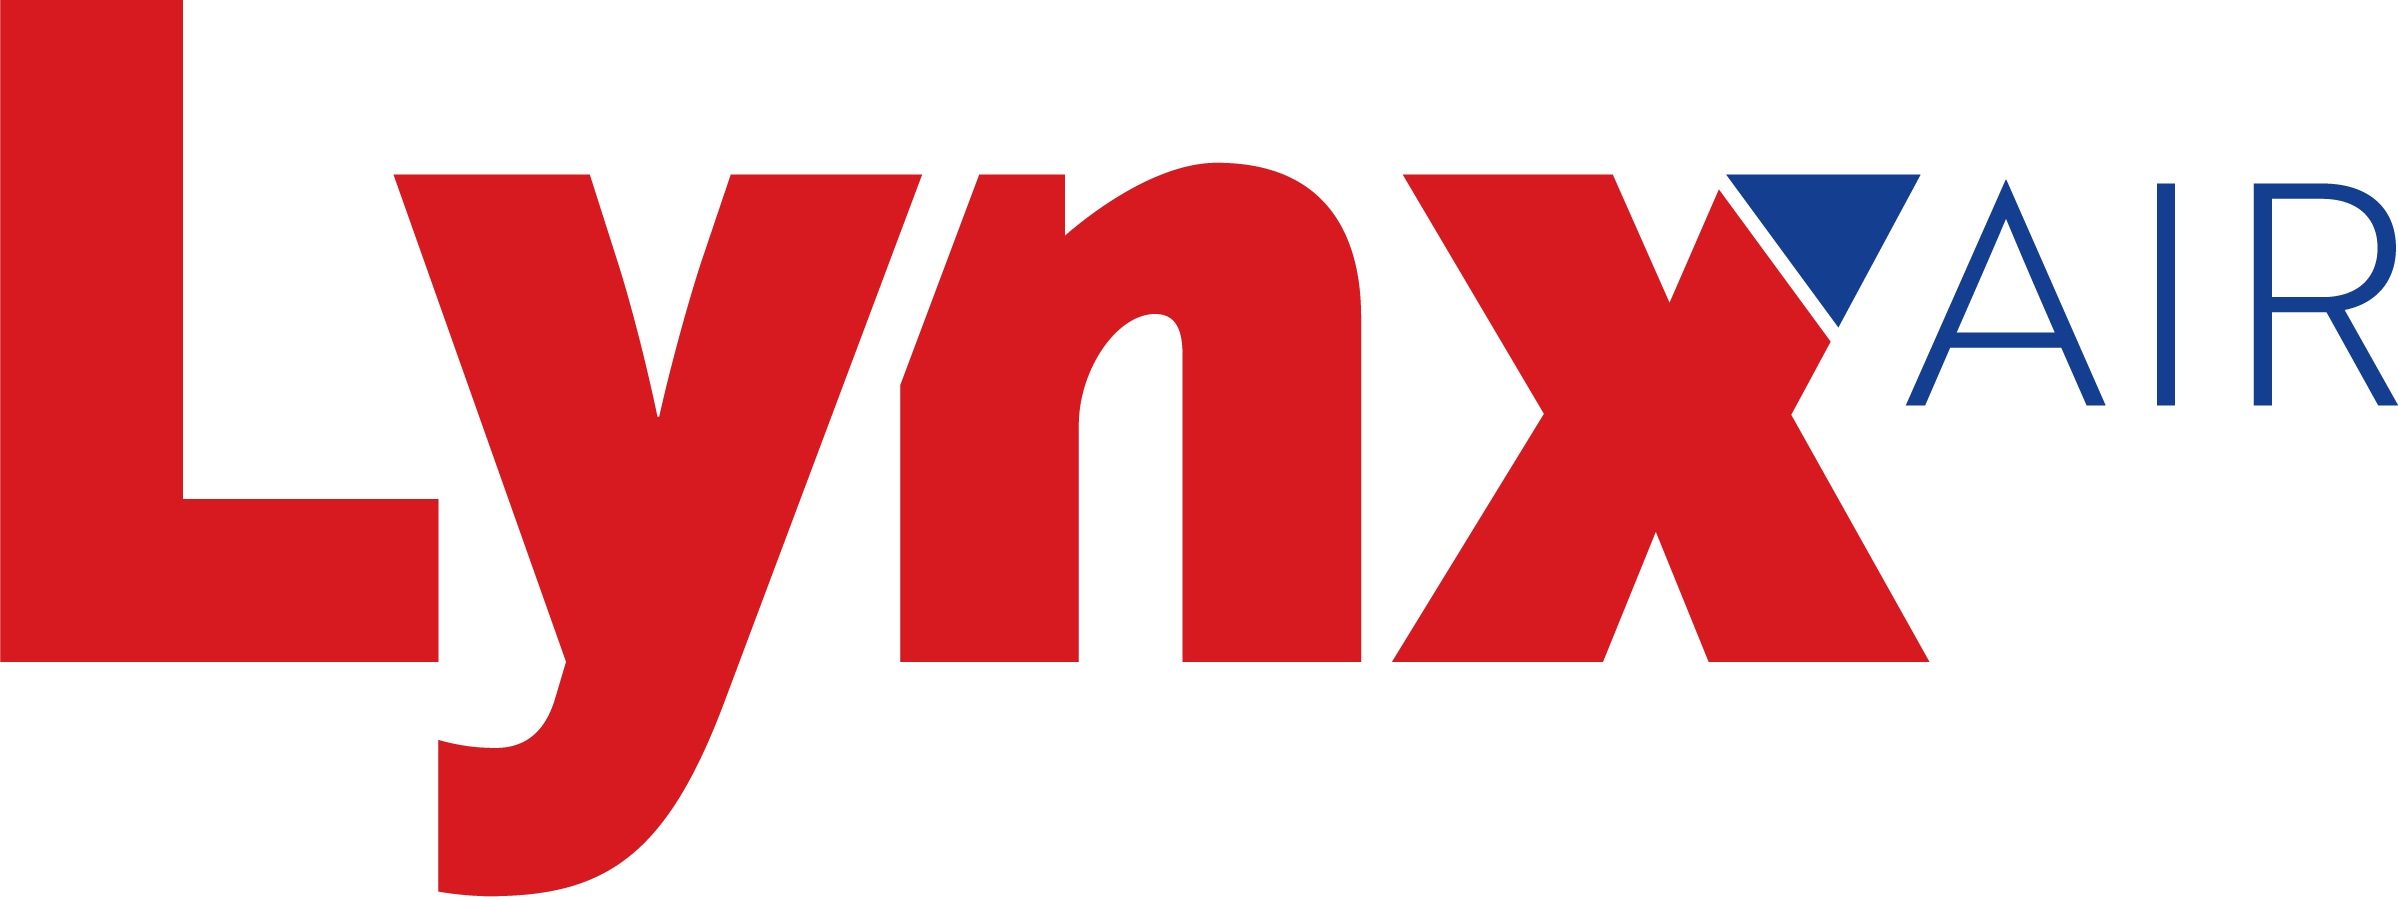 Y9 logo